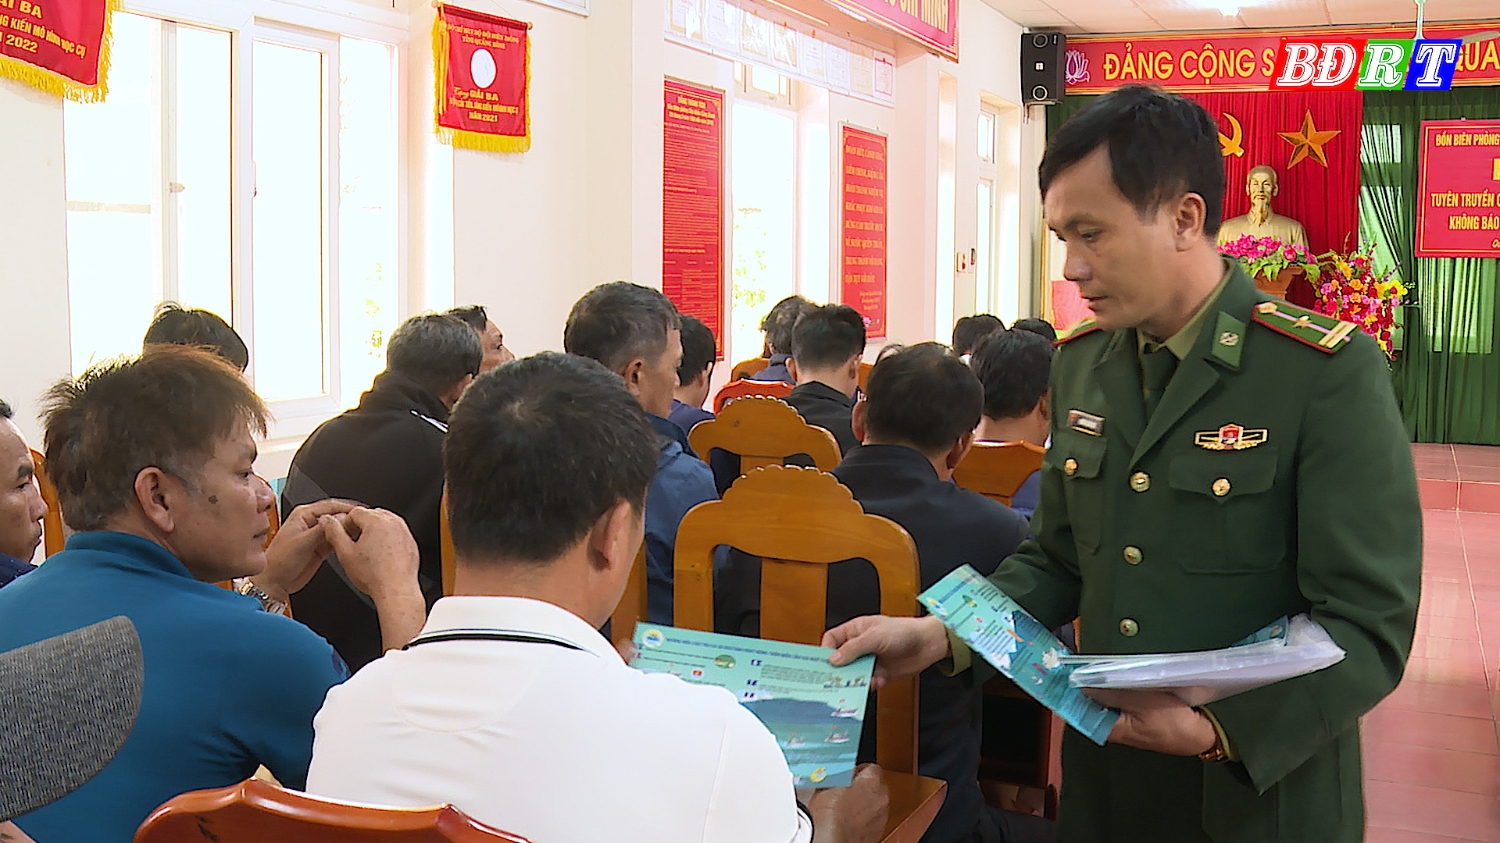 Cán bộ Đồn Biên phòng CK Cảng Gianh phát tờ rơi tuyên truyền pháp luật cho ngư dân